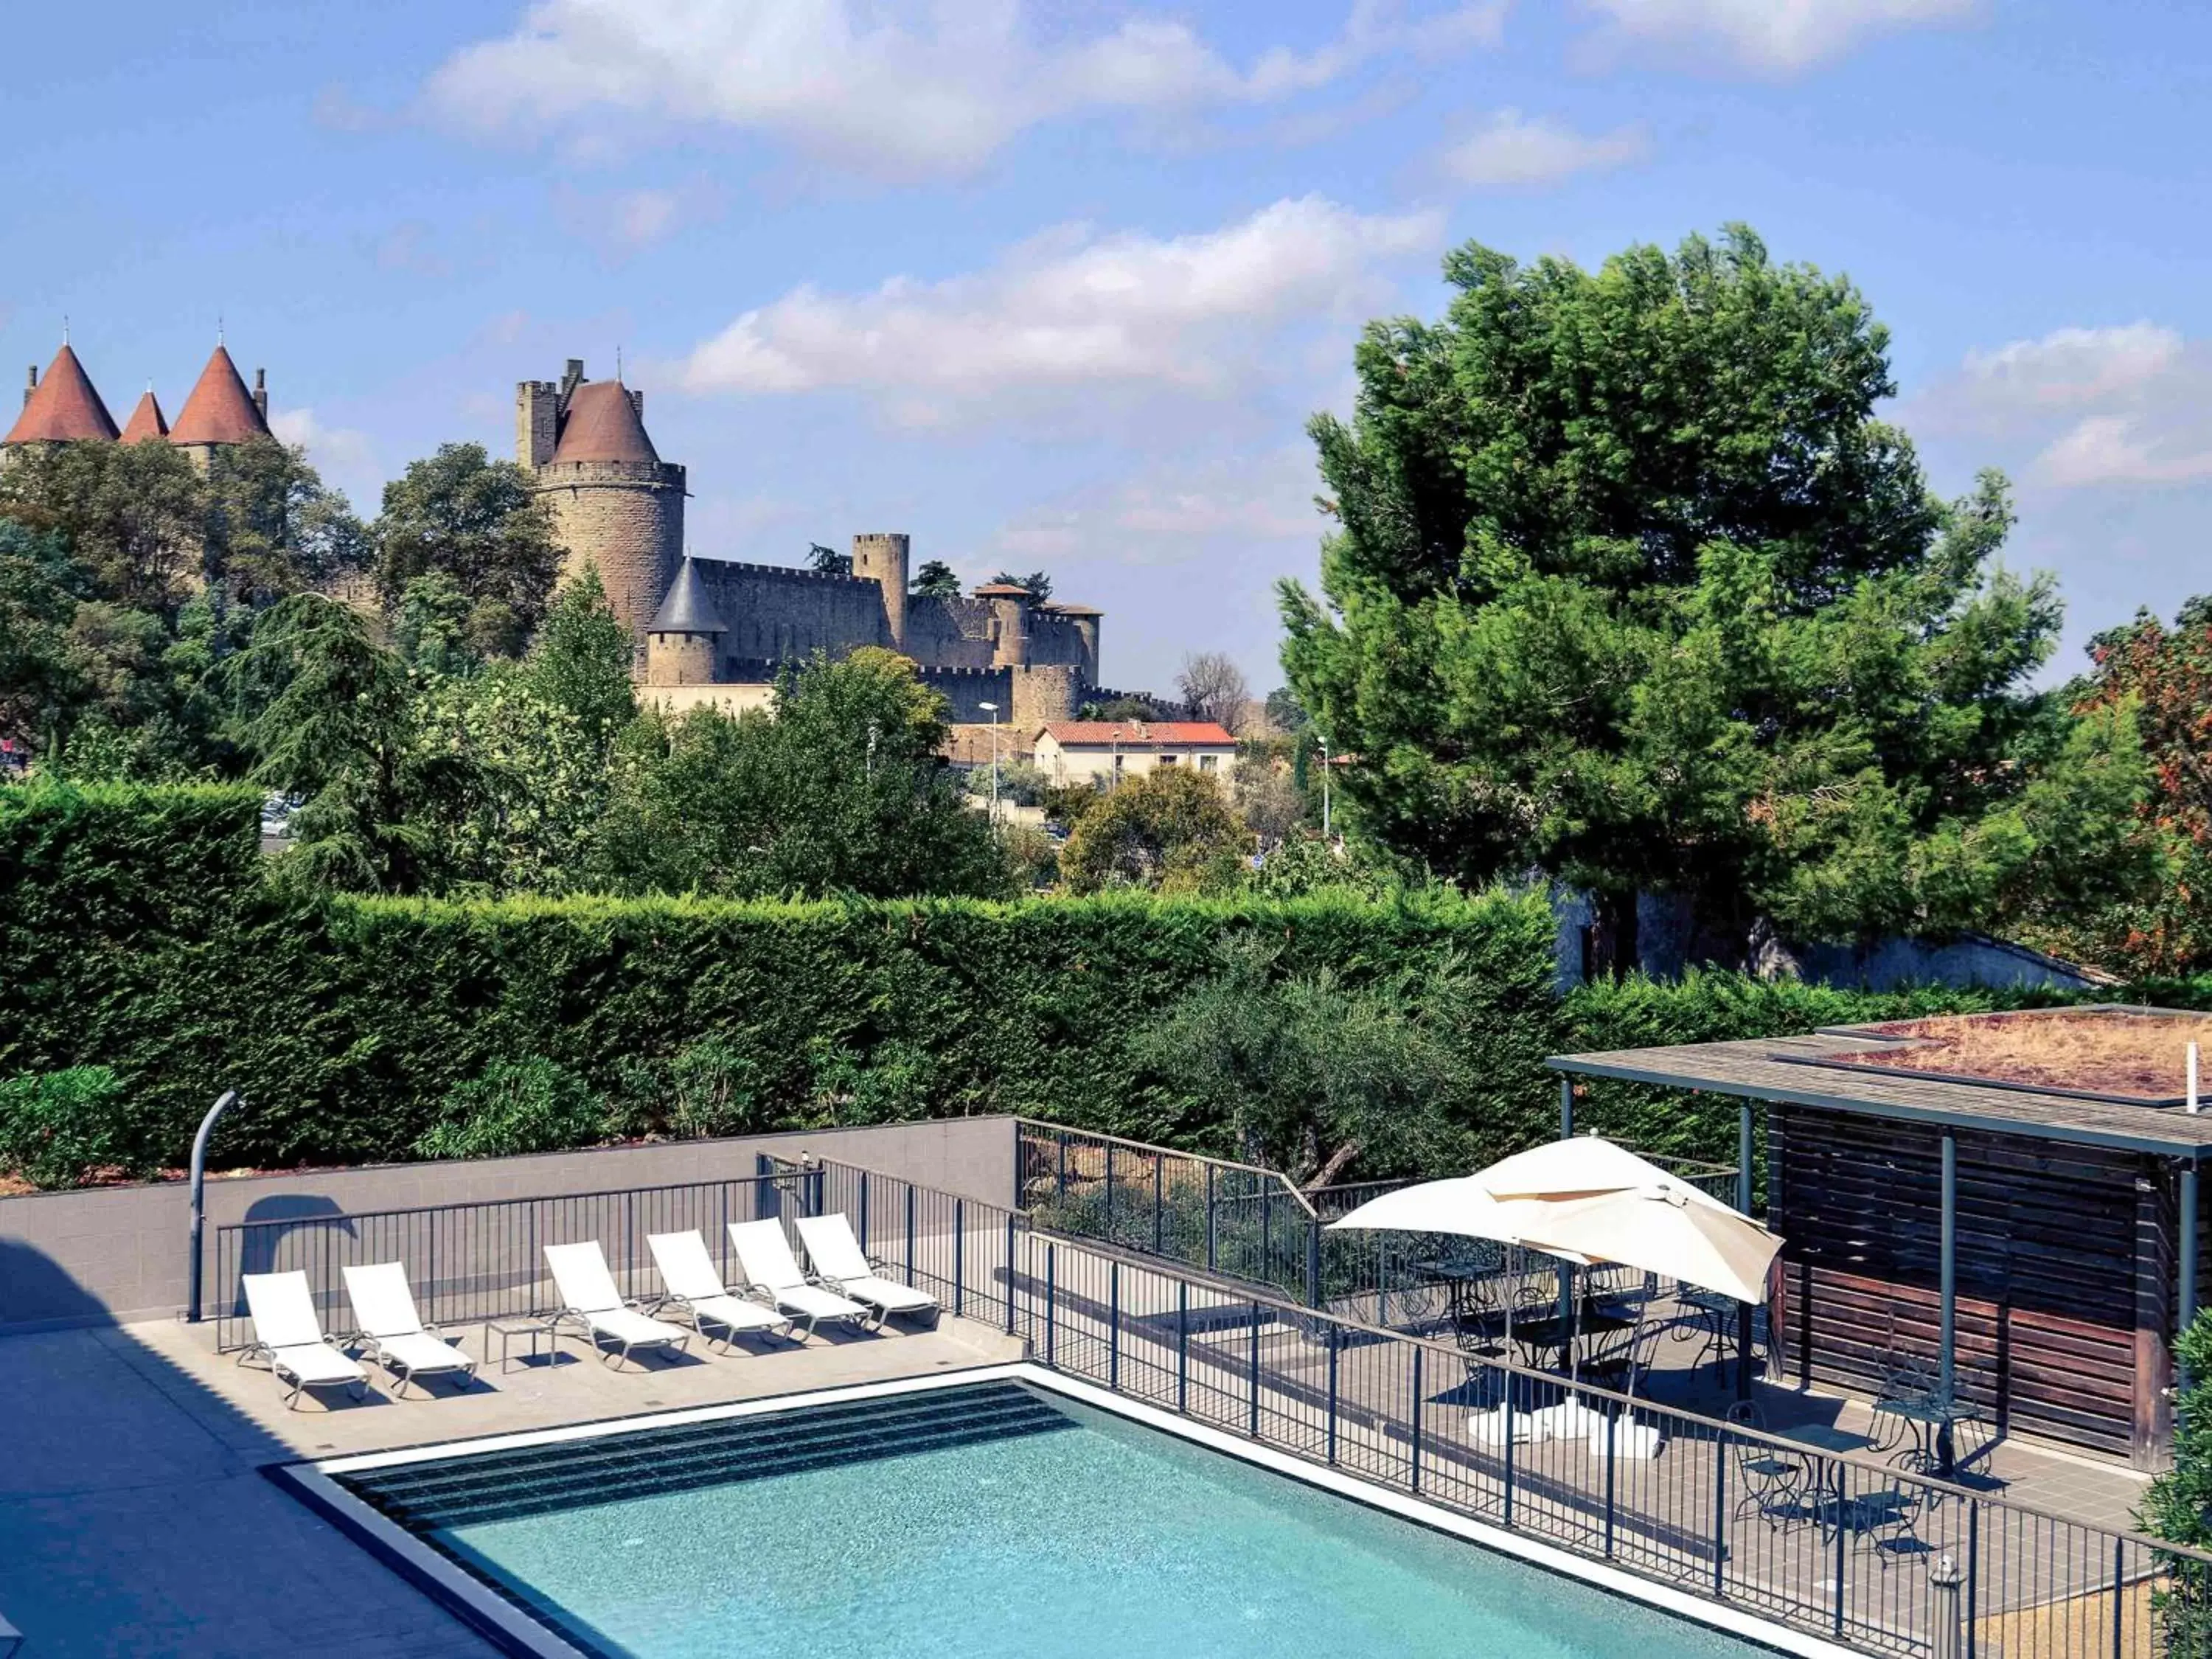 On site, Swimming Pool in Mercure Carcassonne La Cité - entièrement rénové